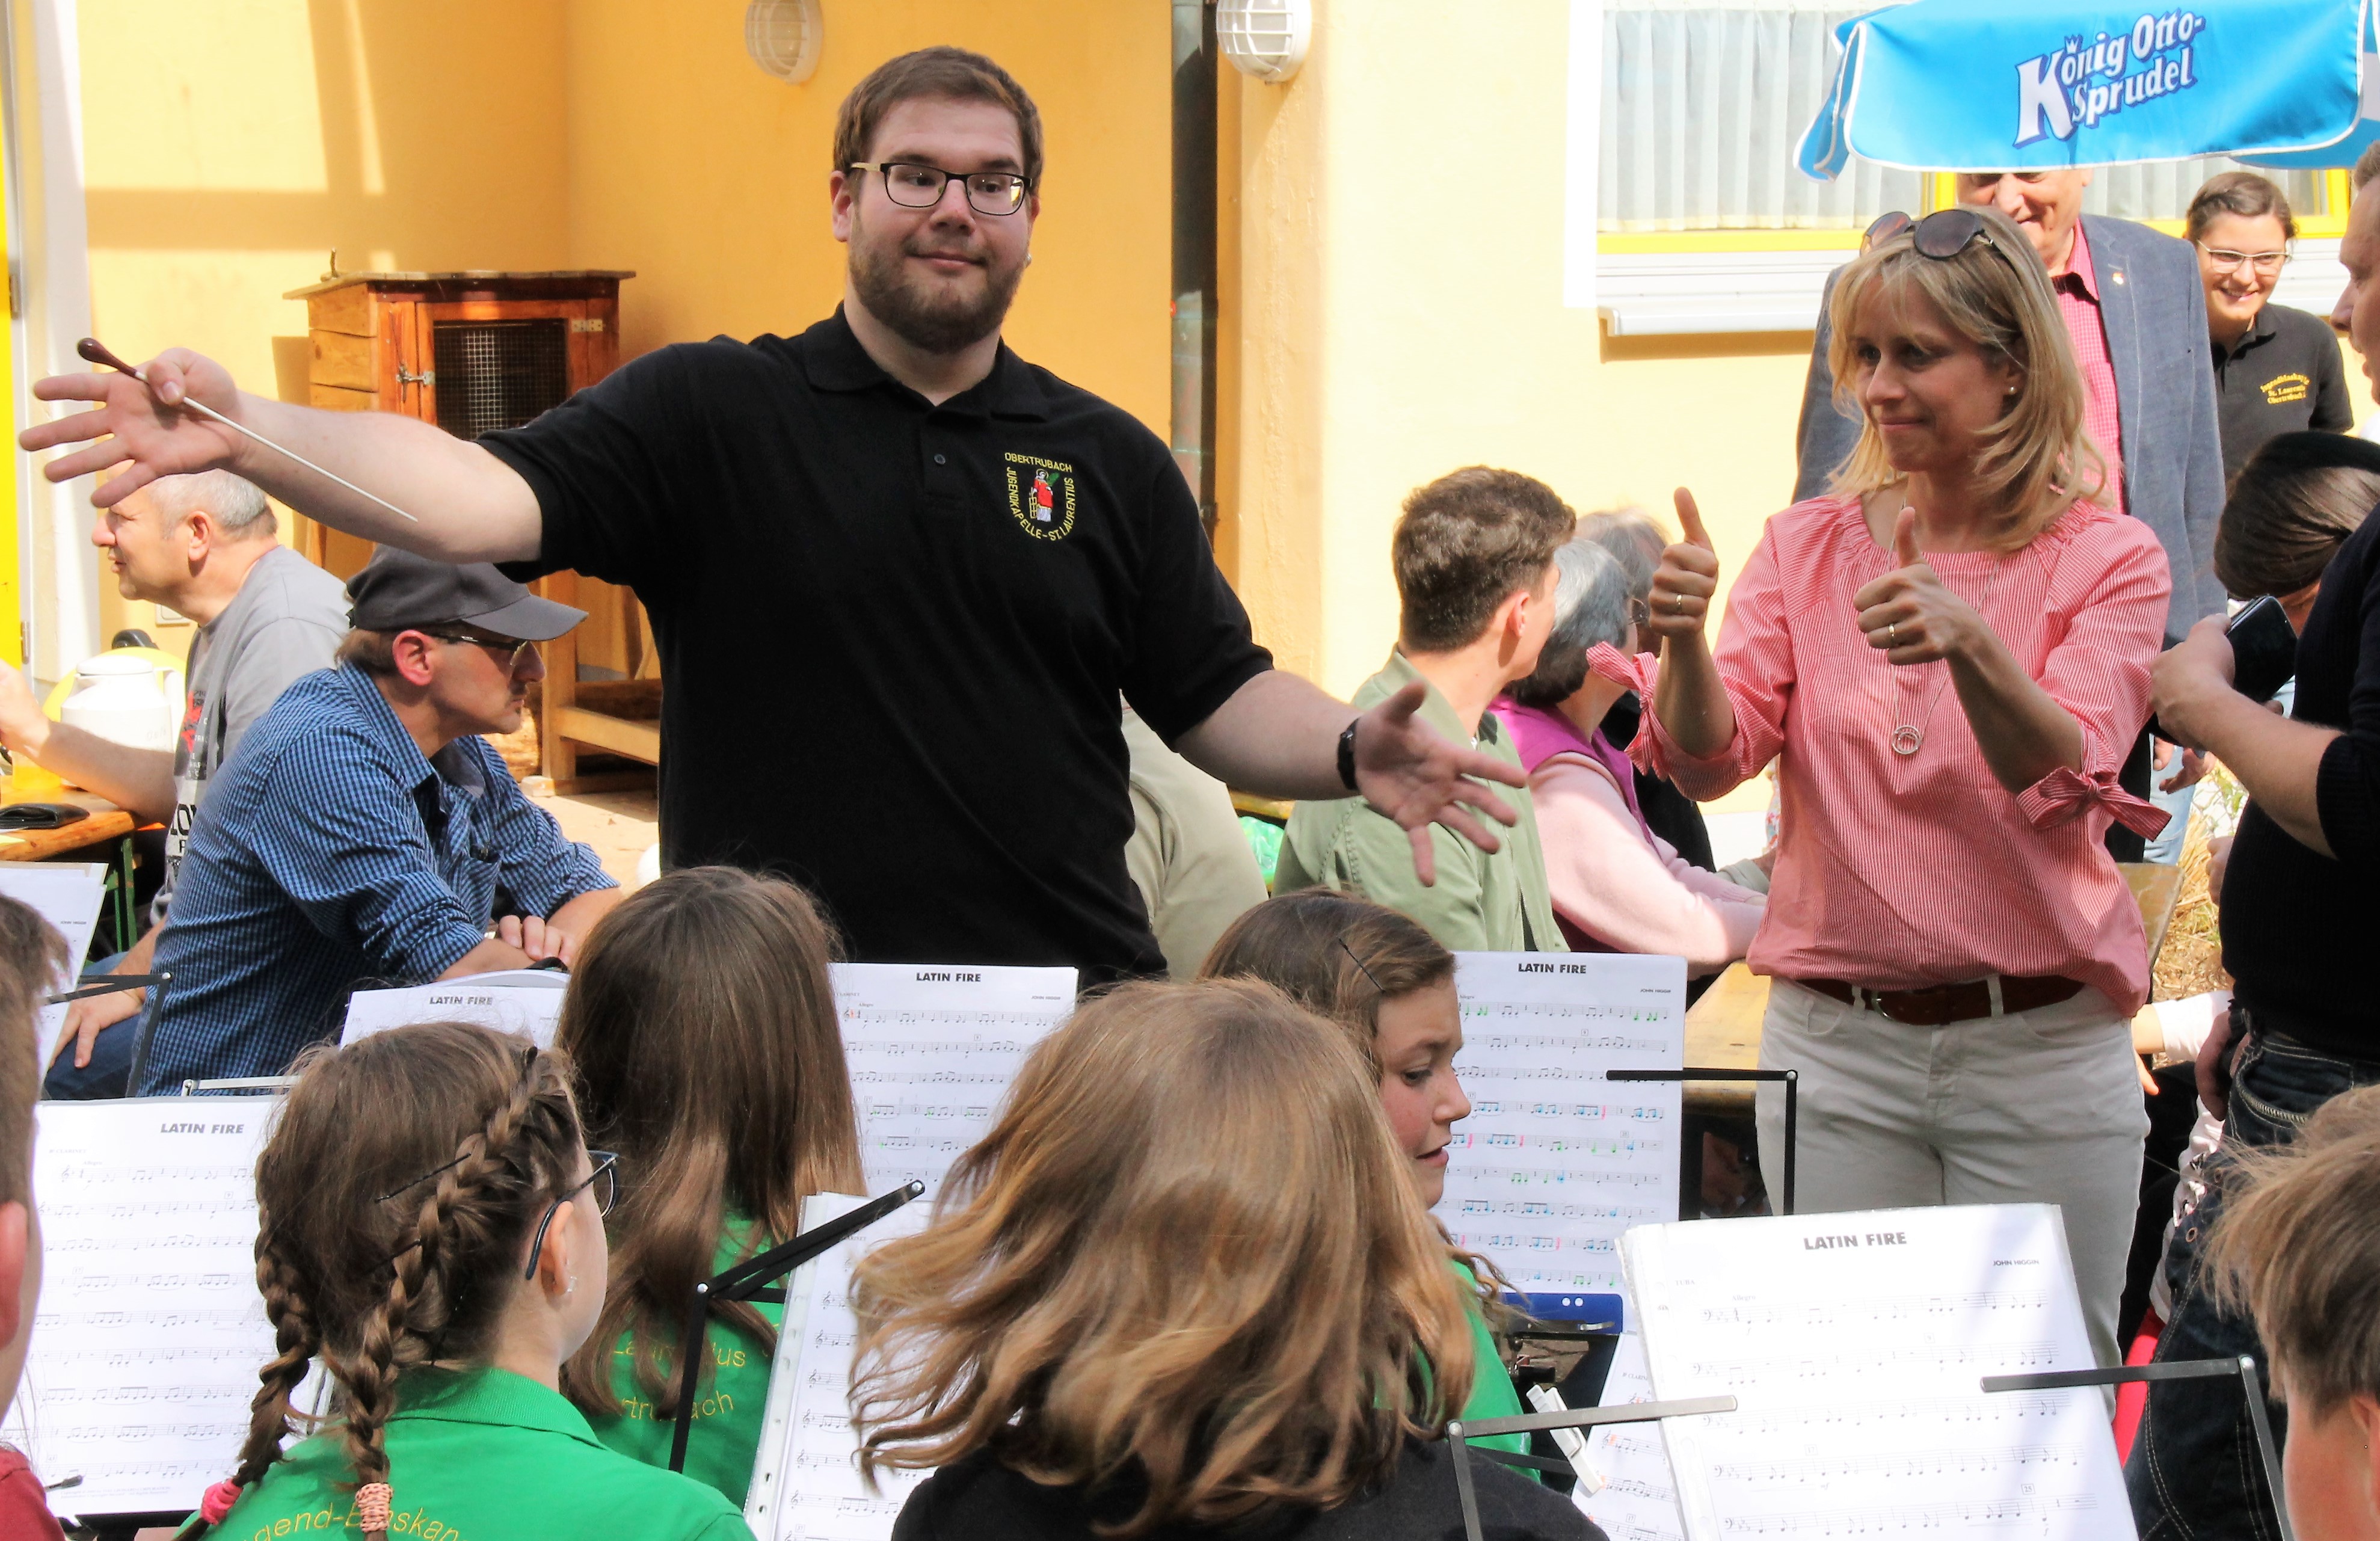 Nachwuchsmusiker beim Kindergarten Frühlingsfest 2018